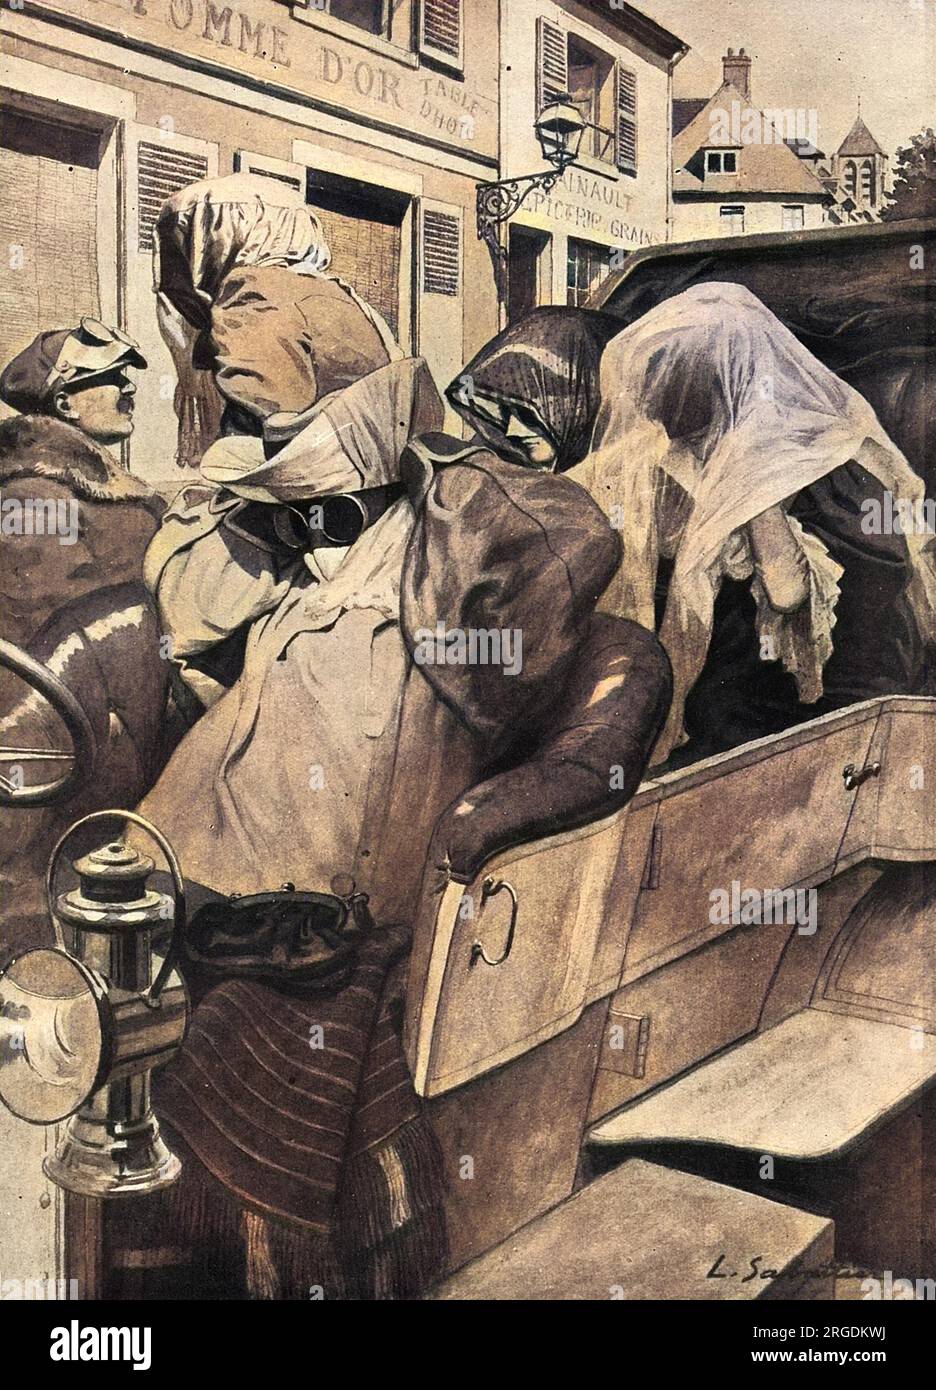 L'evoluzione del viaggio su strada: L'automobilista silenziato del 1905. Un gruppo di 1905 persone che arriva a destinazione indossando occhiali, veli e avvolgimenti voluminosi. Vedere la figura 10638720 per il contrasto con questo stile di viaggio nel 1921. Foto Stock